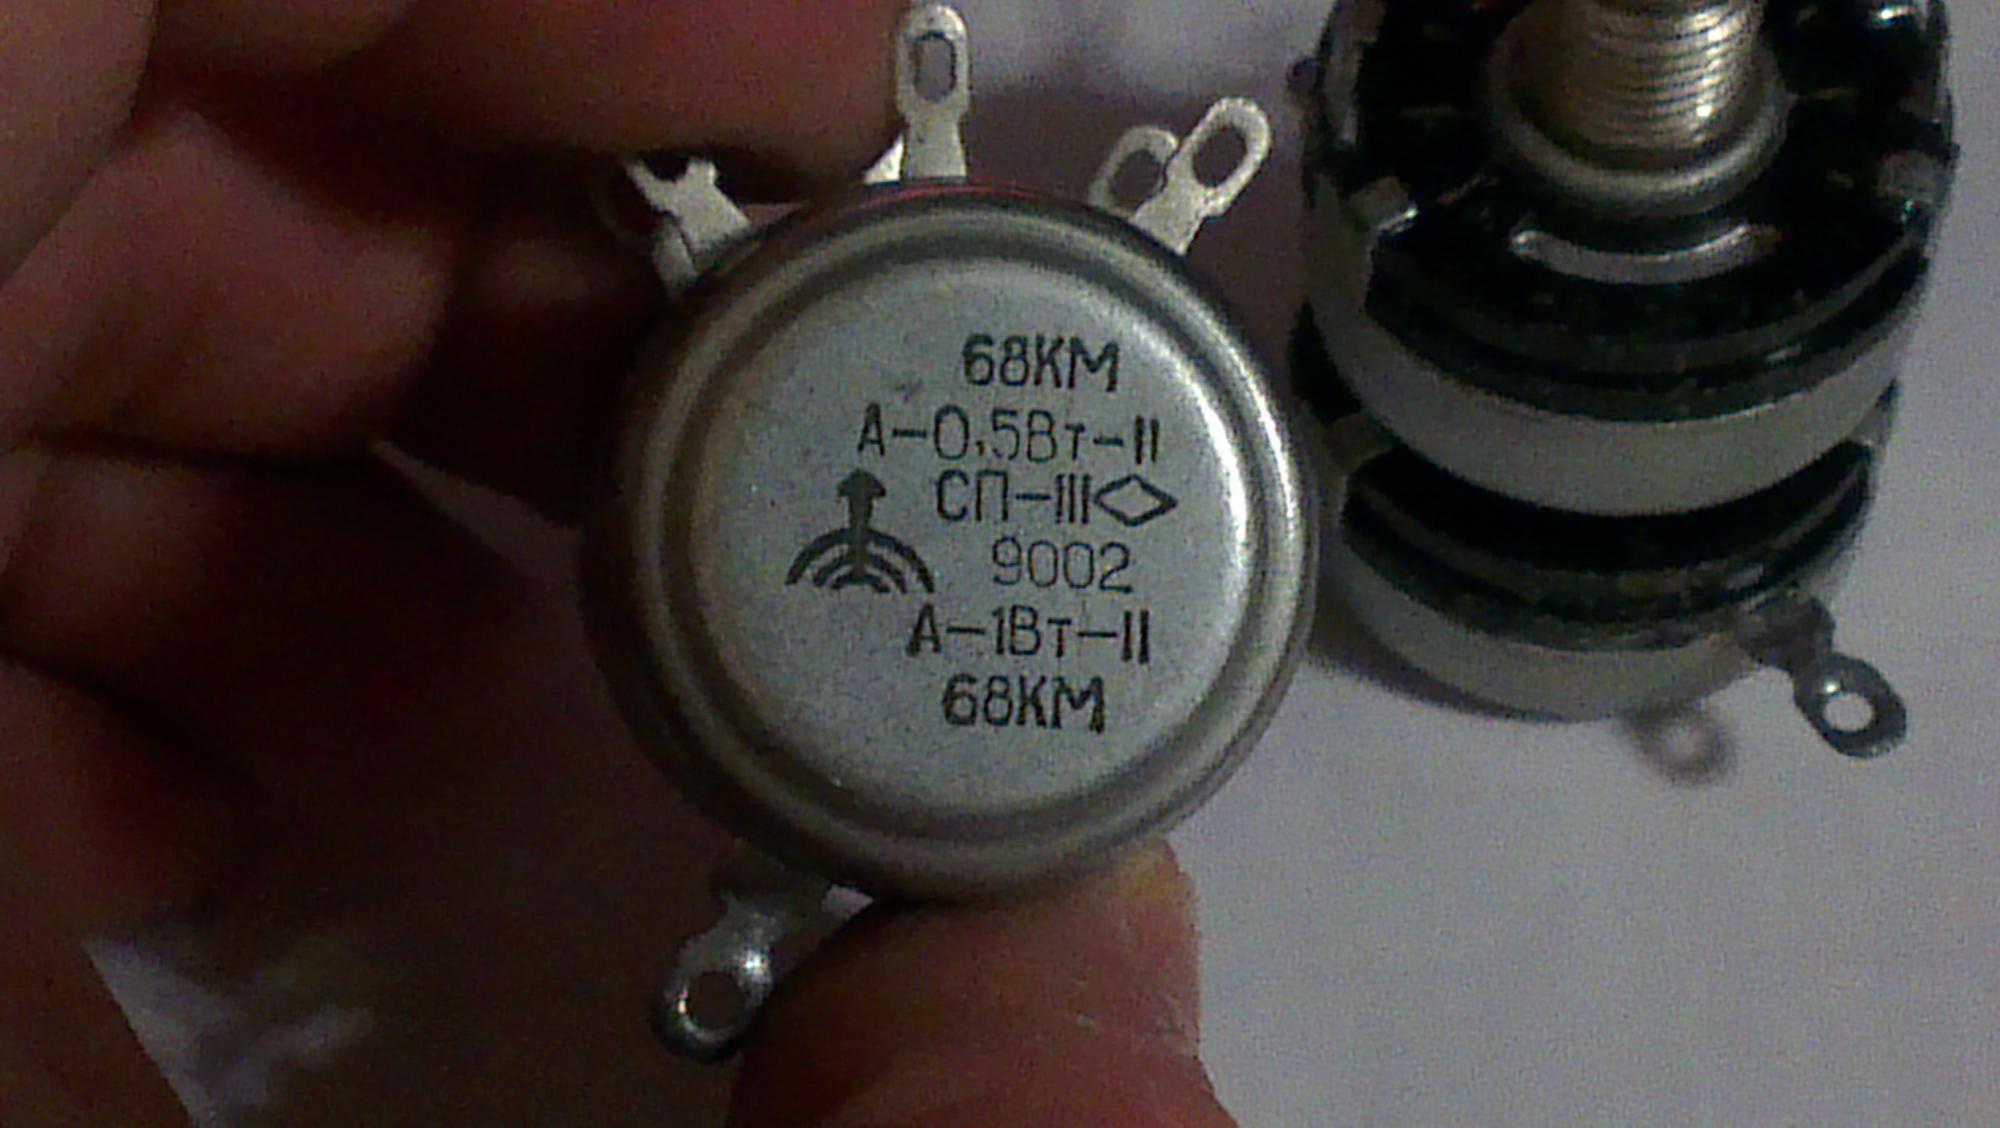 Сп4 1а. Сдвоенный переменный резистор СП-1. Резистор переменный сдвоенный сп3-12. Резистор СП-1 0783 А-1вт-11 68кв. Резистор СП-III сдвоенный.